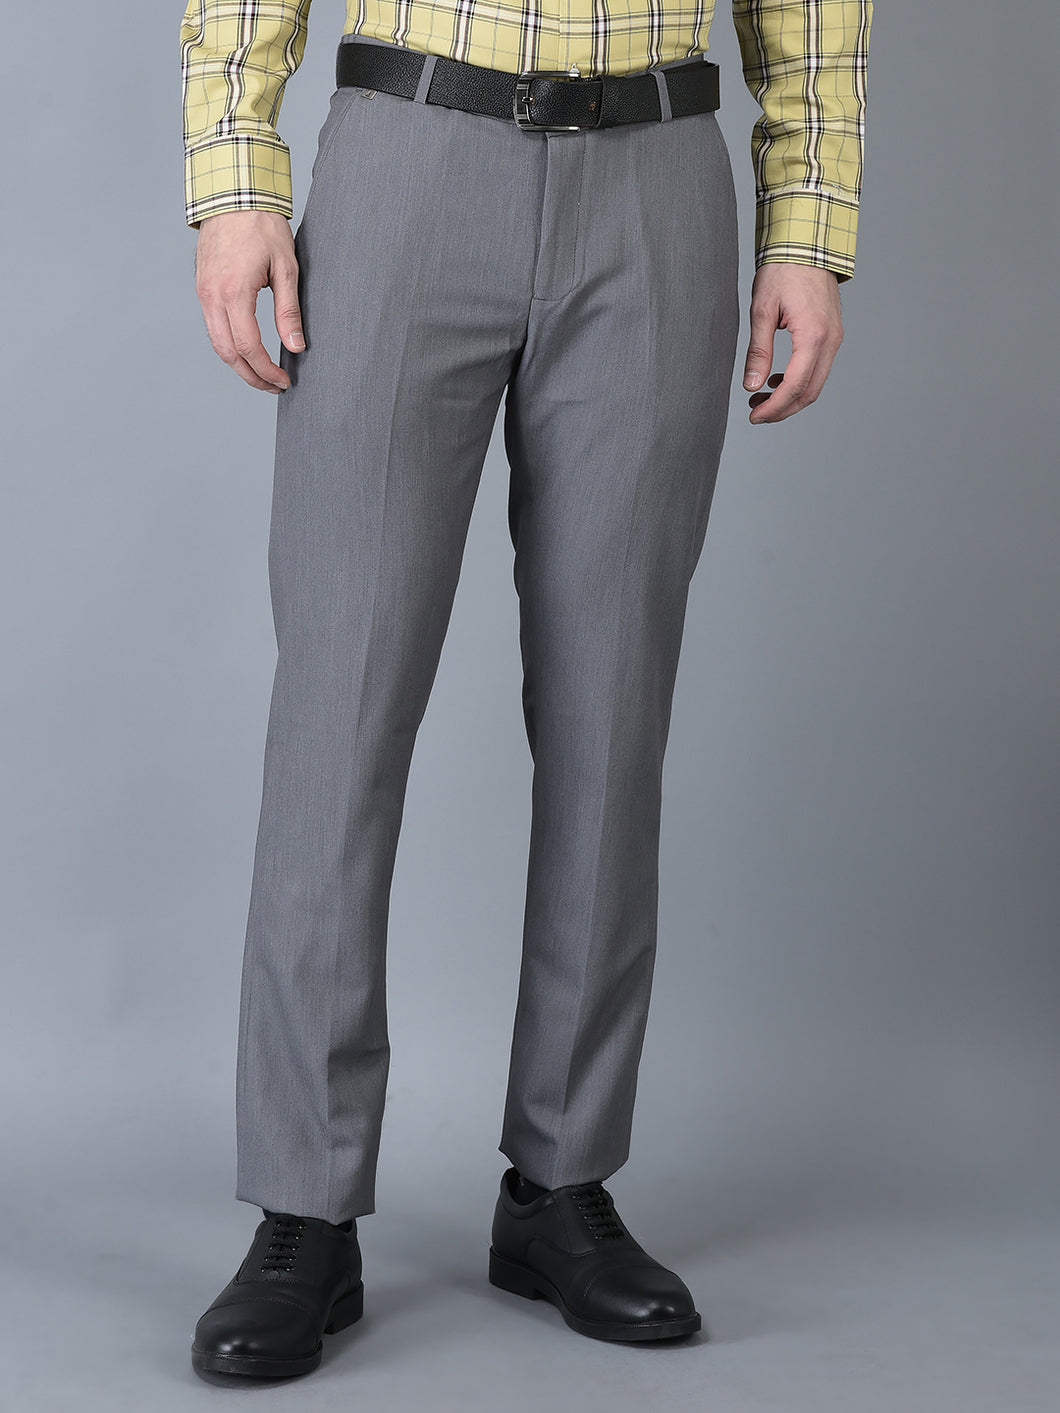 CANOE MEN Formal Trouser  Grey Color